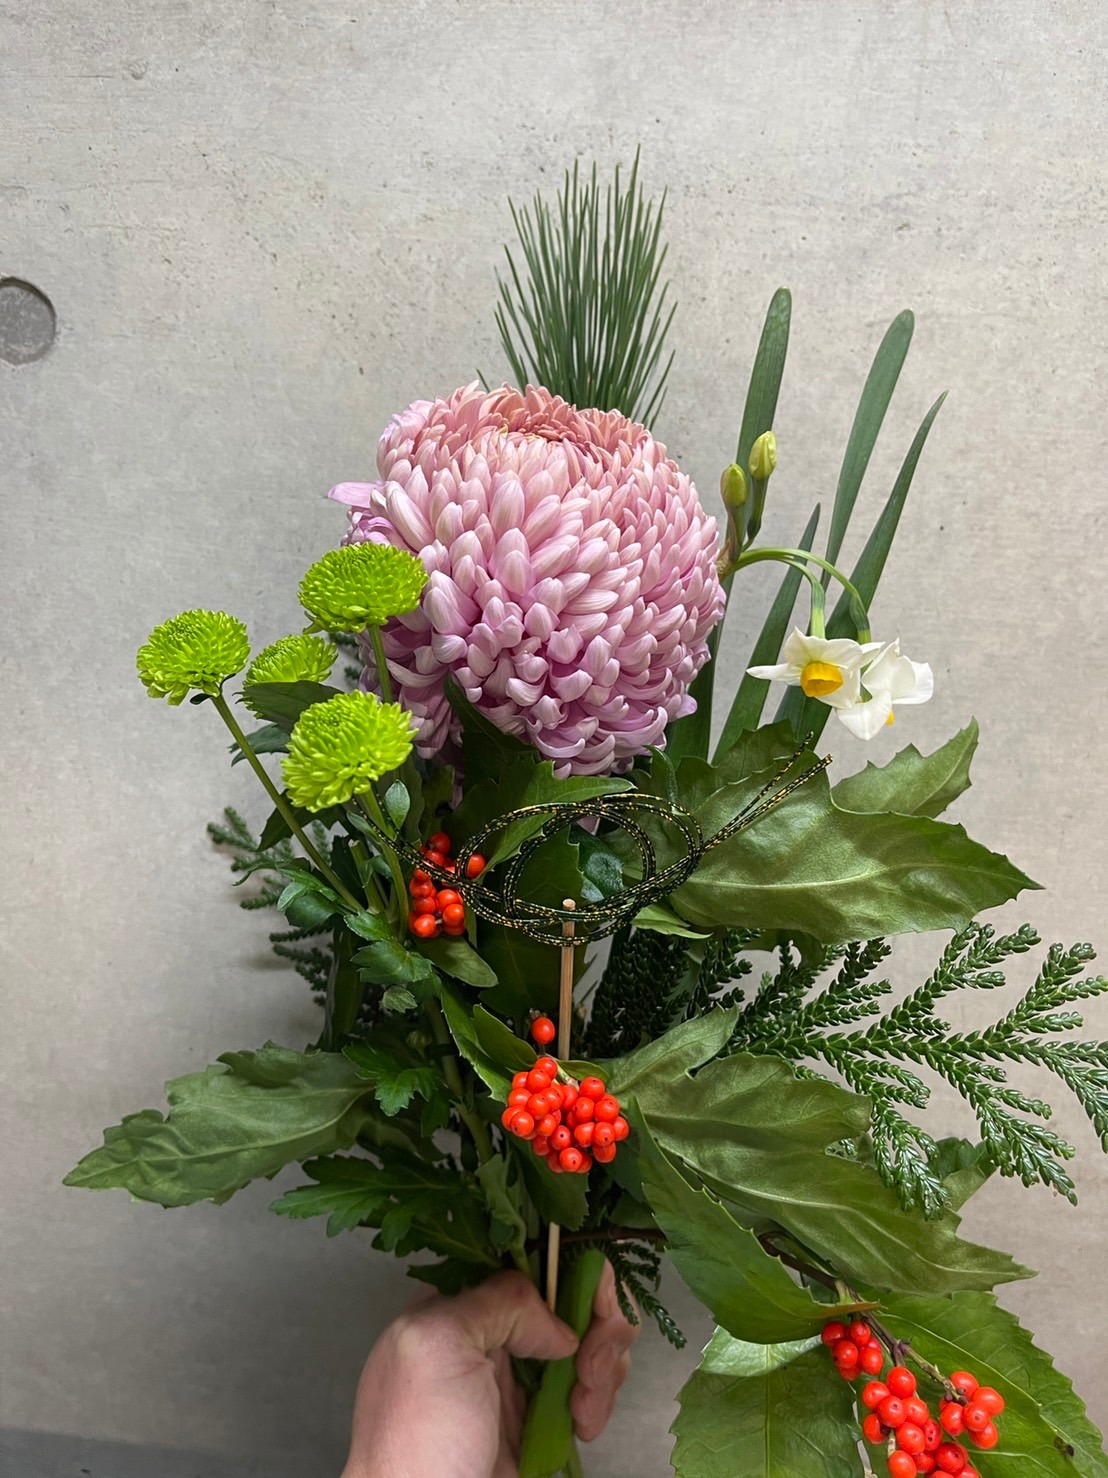 12月27日発送の定期便テーマ 迎春 お正月花を飾ろう よいはな Yoihana 最高品質のお花をお届けするネット通販